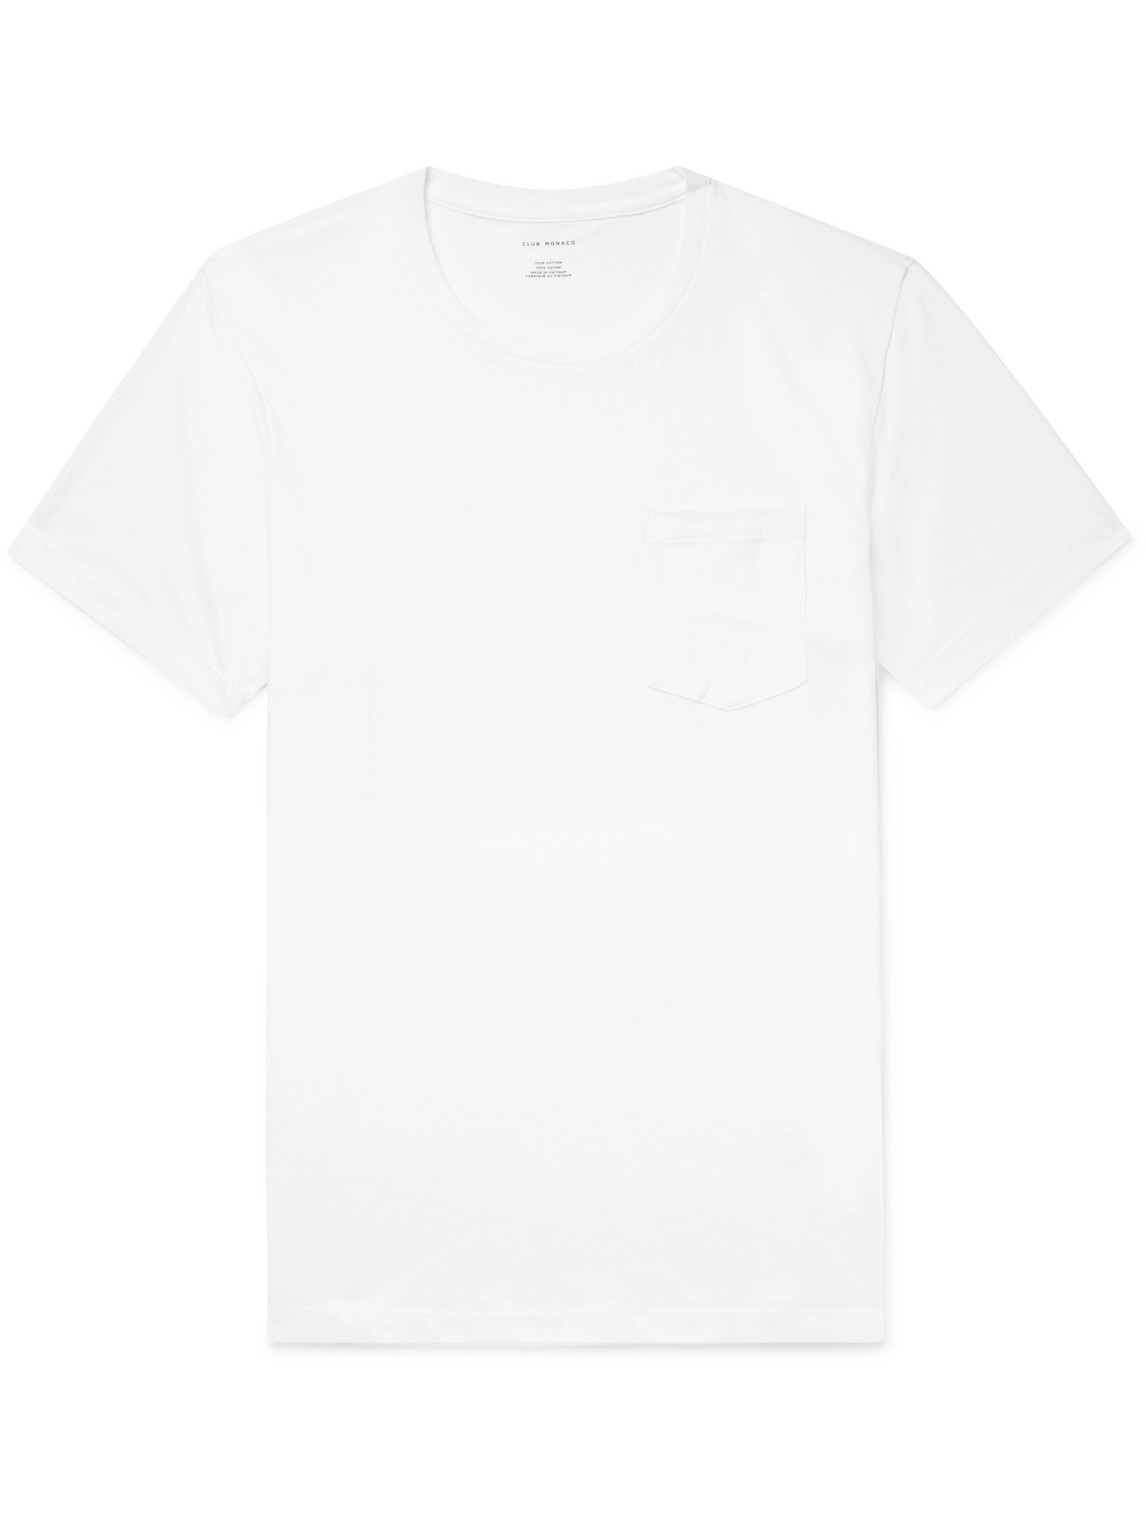 Club Monaco - Williams Cotton-Jersey T-Shirt - Men - White - XXL von Club Monaco